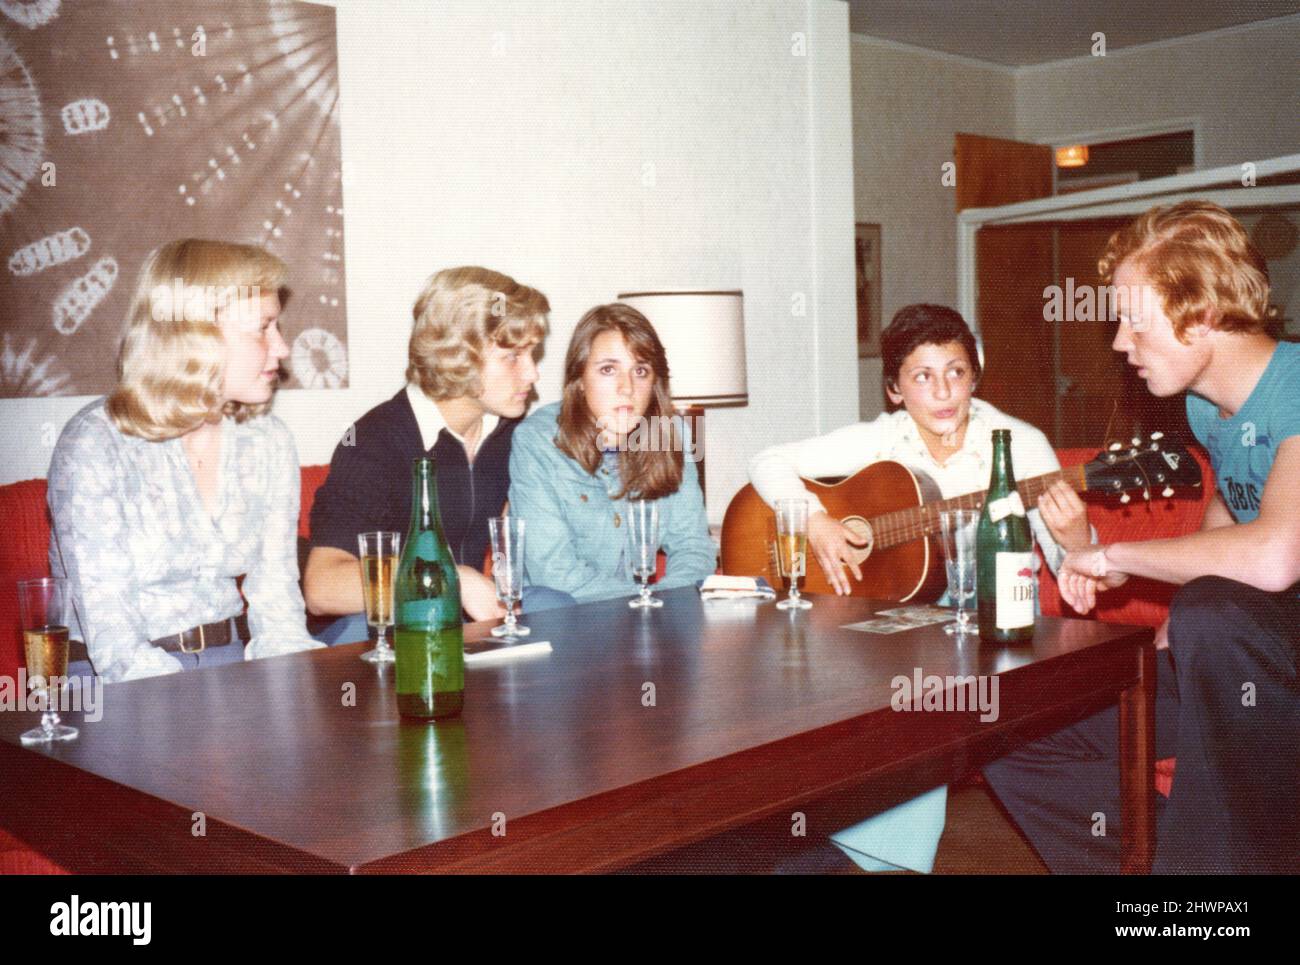 Originalfoto der 1970er Jahre von einer Gruppe schwedischer Teenager, die reden, trinken und Gitarre spielen, Schweden. Konzept von Freundschaft, Zweisamkeit, Nostalgie Stockfoto